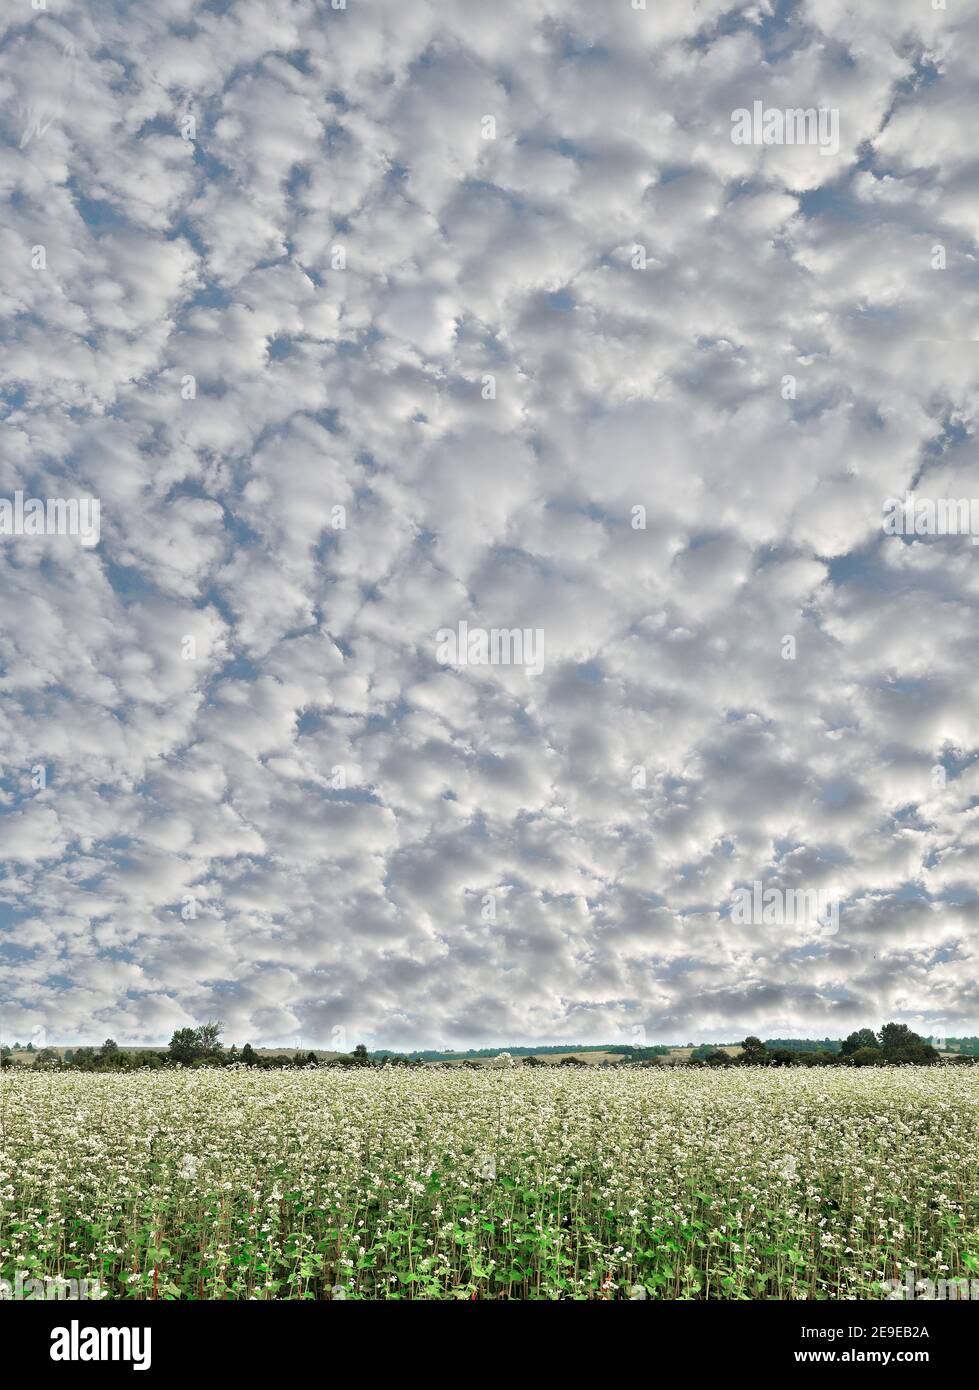 Merveilleux nuages de stratocumulus moelleux sur le ciel bleu au-dessus du champ de sarrasin en fleur. Paysage de printemps incroyable, beauté de la nature au printemps Banque D'Images